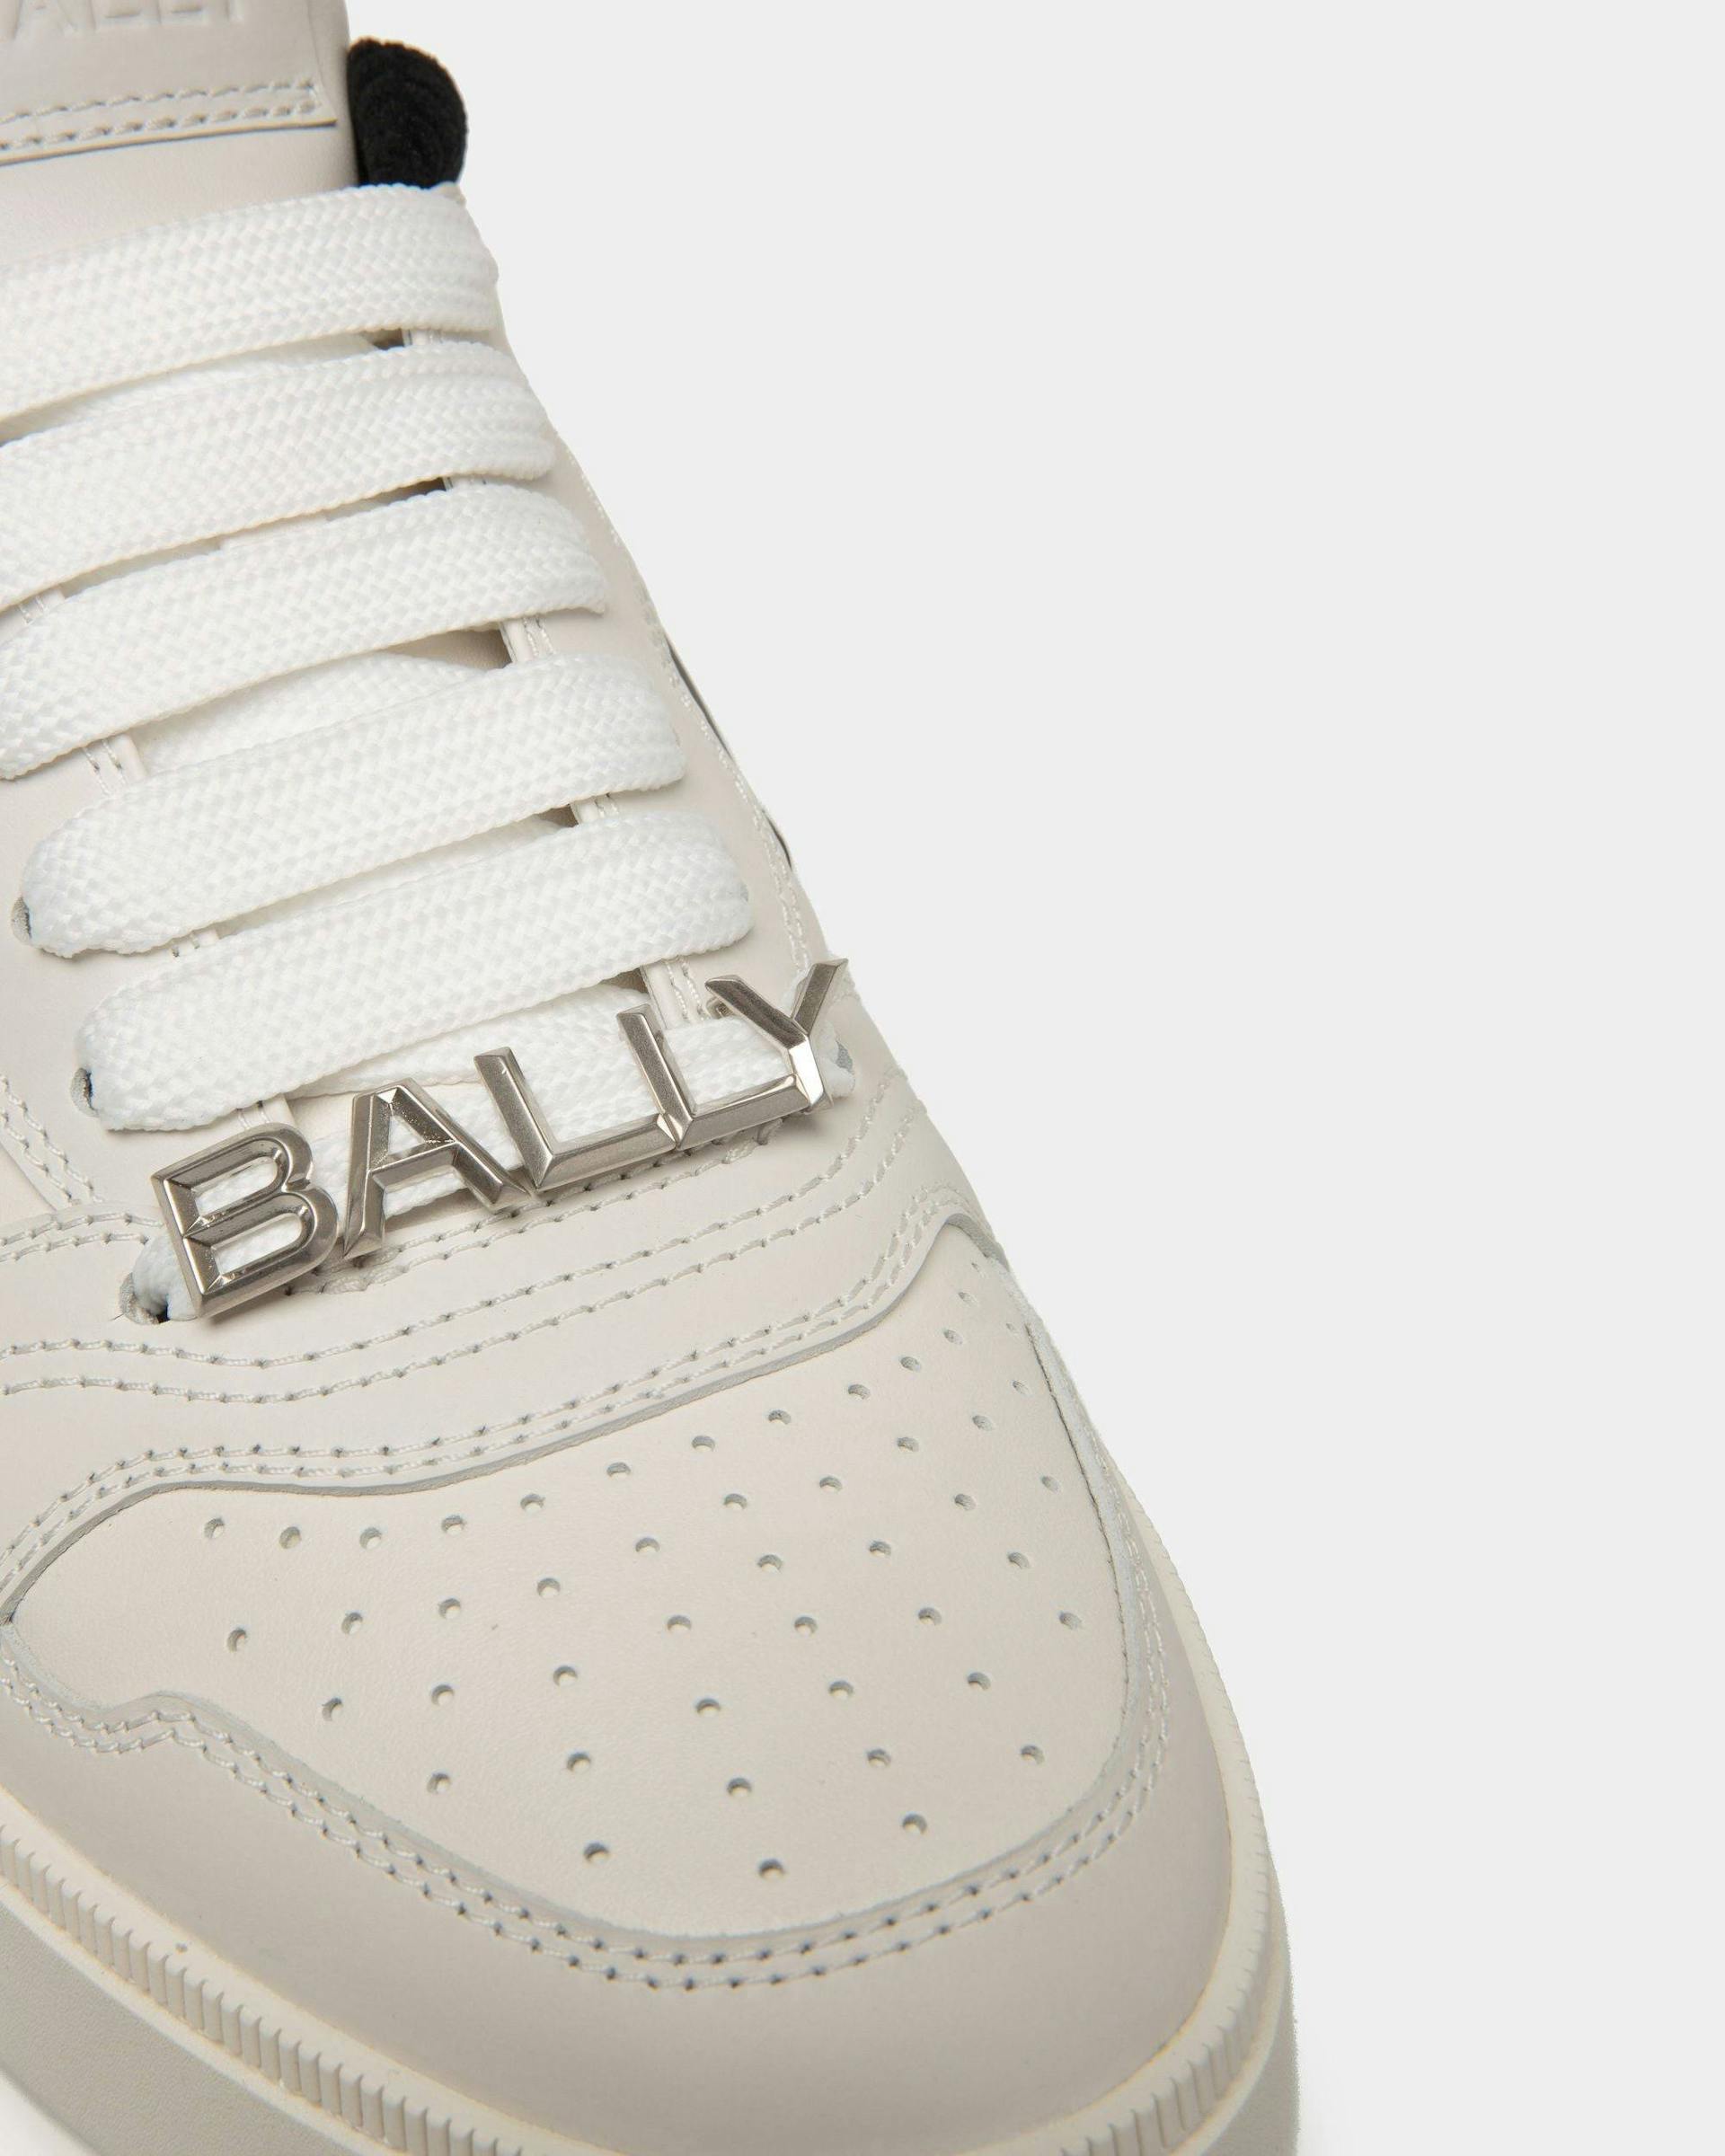 Men's Raise Sneaker in Leather | Bally | Still Life Detail